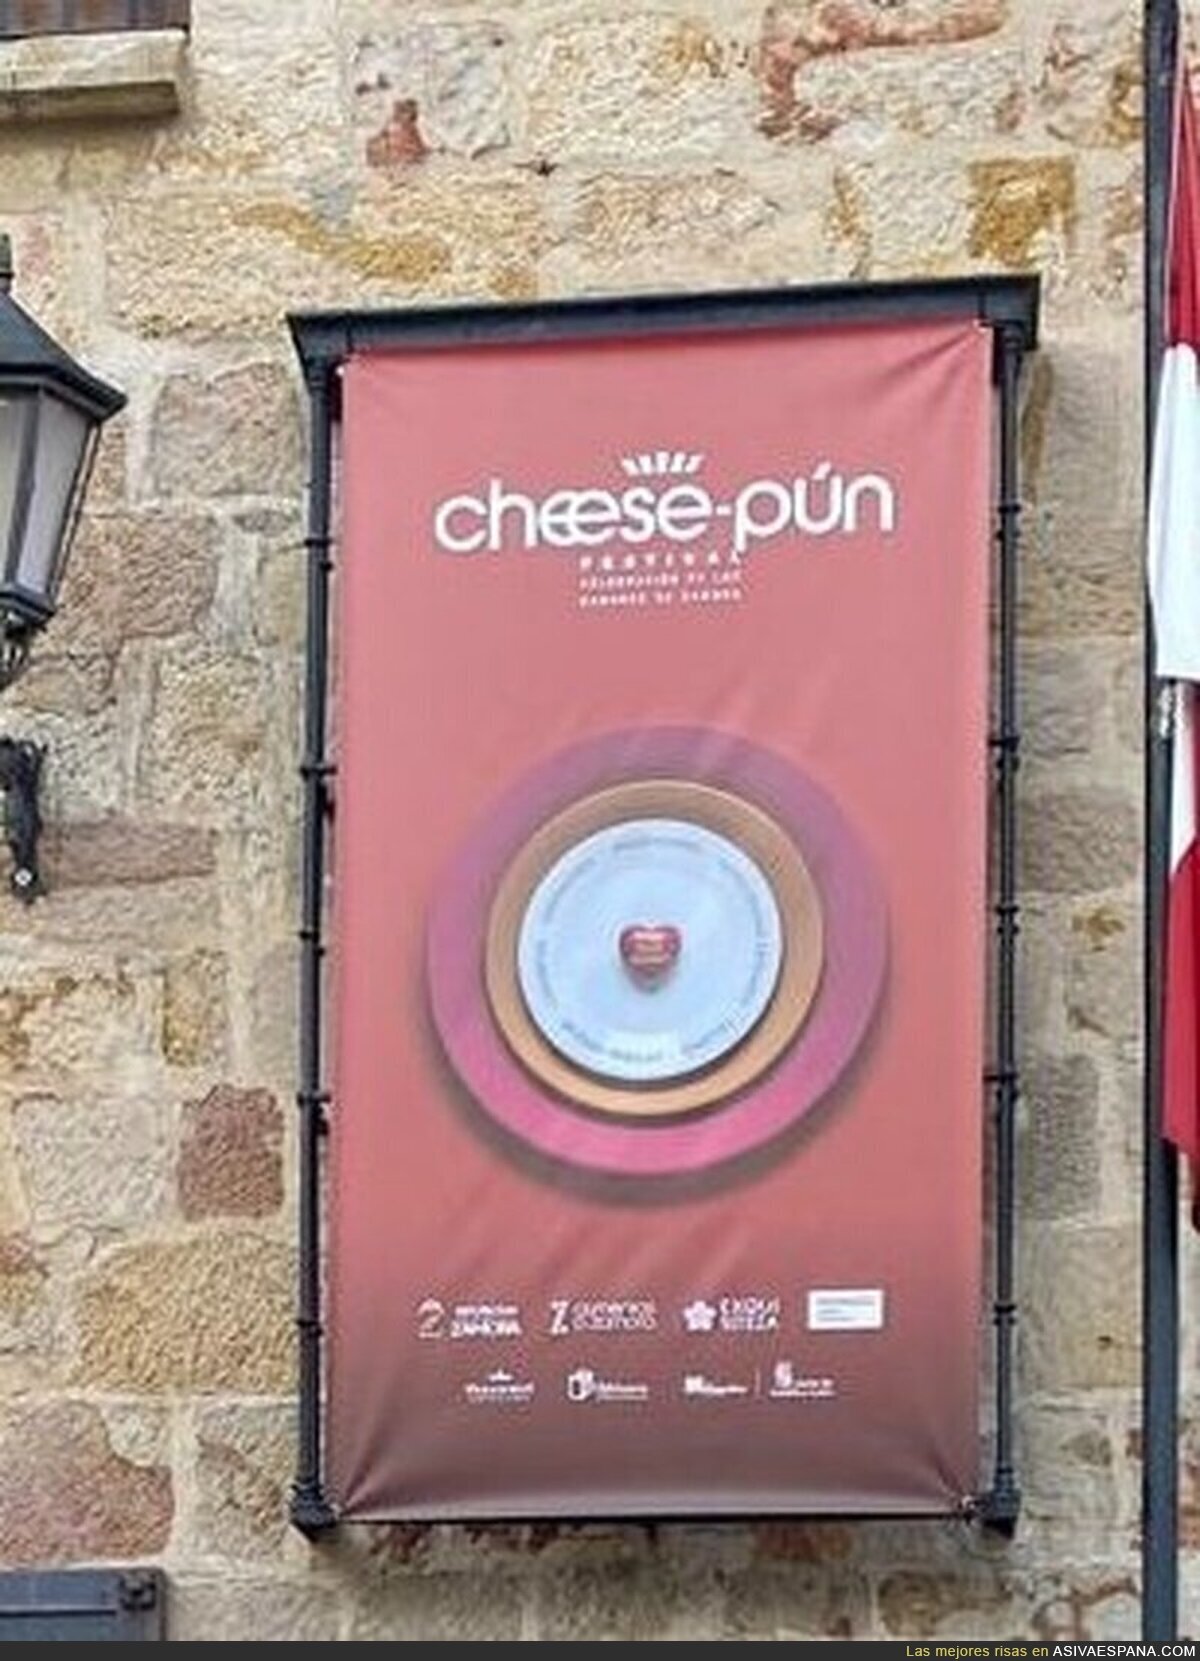 Que el eslogan en la feria del queso de Zamora sea "Cheese-pun" me parece simplemente genial, por @memes_zamora